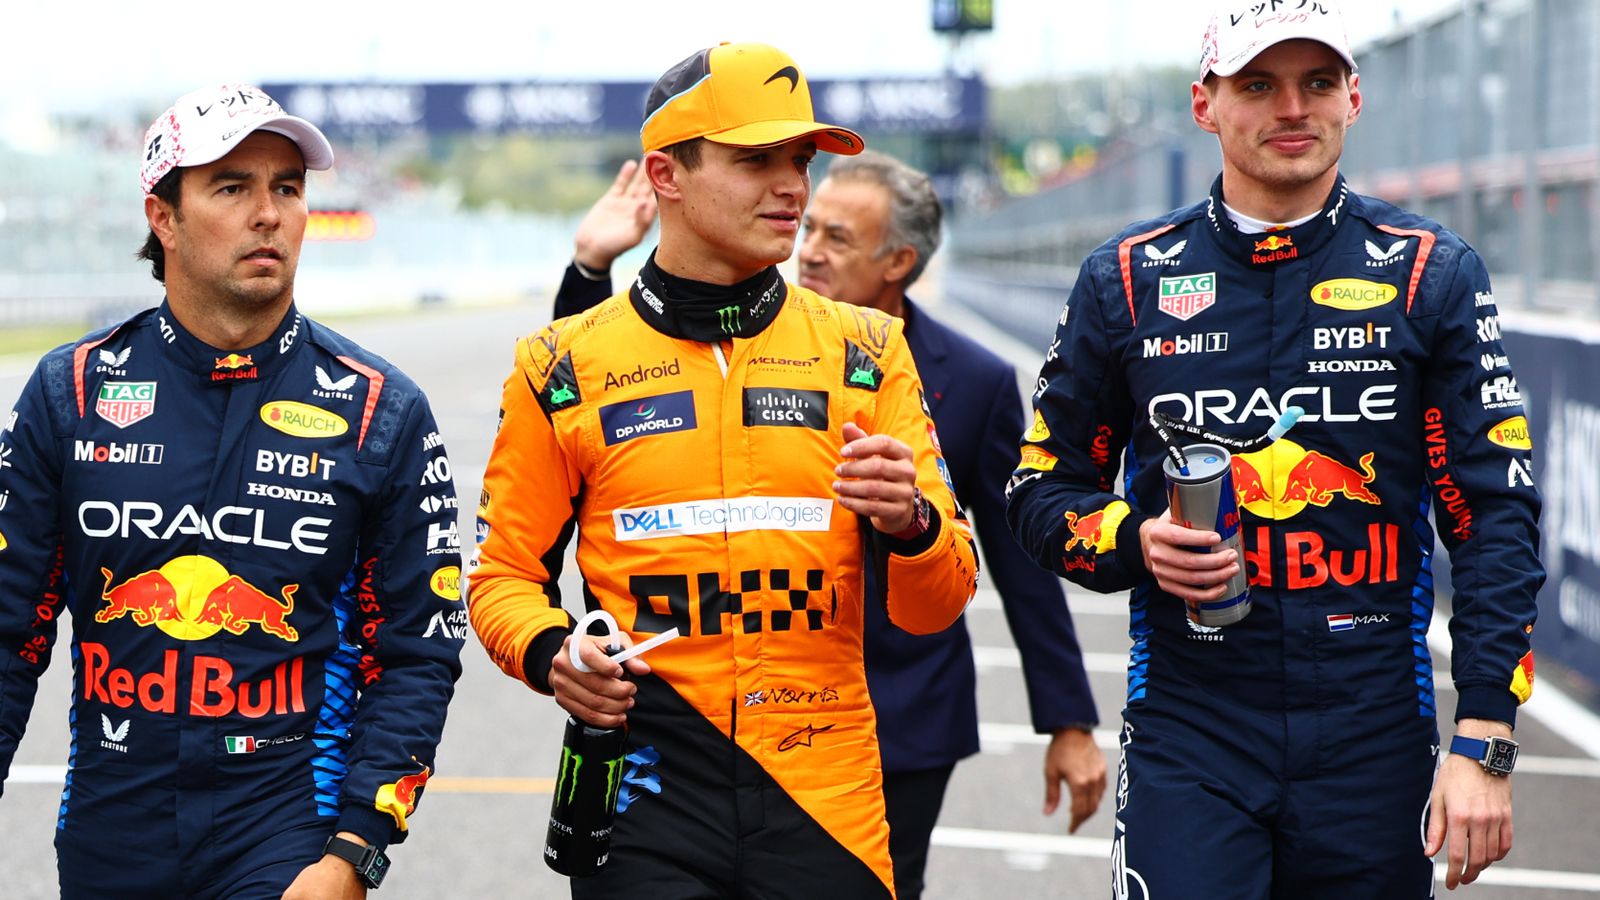 GP de Japón: Max Verstappen no está seguro del ritmo de carrera de Red Bull para dar esperanza a los rivales de F1, Suzuka |  Noticias F1